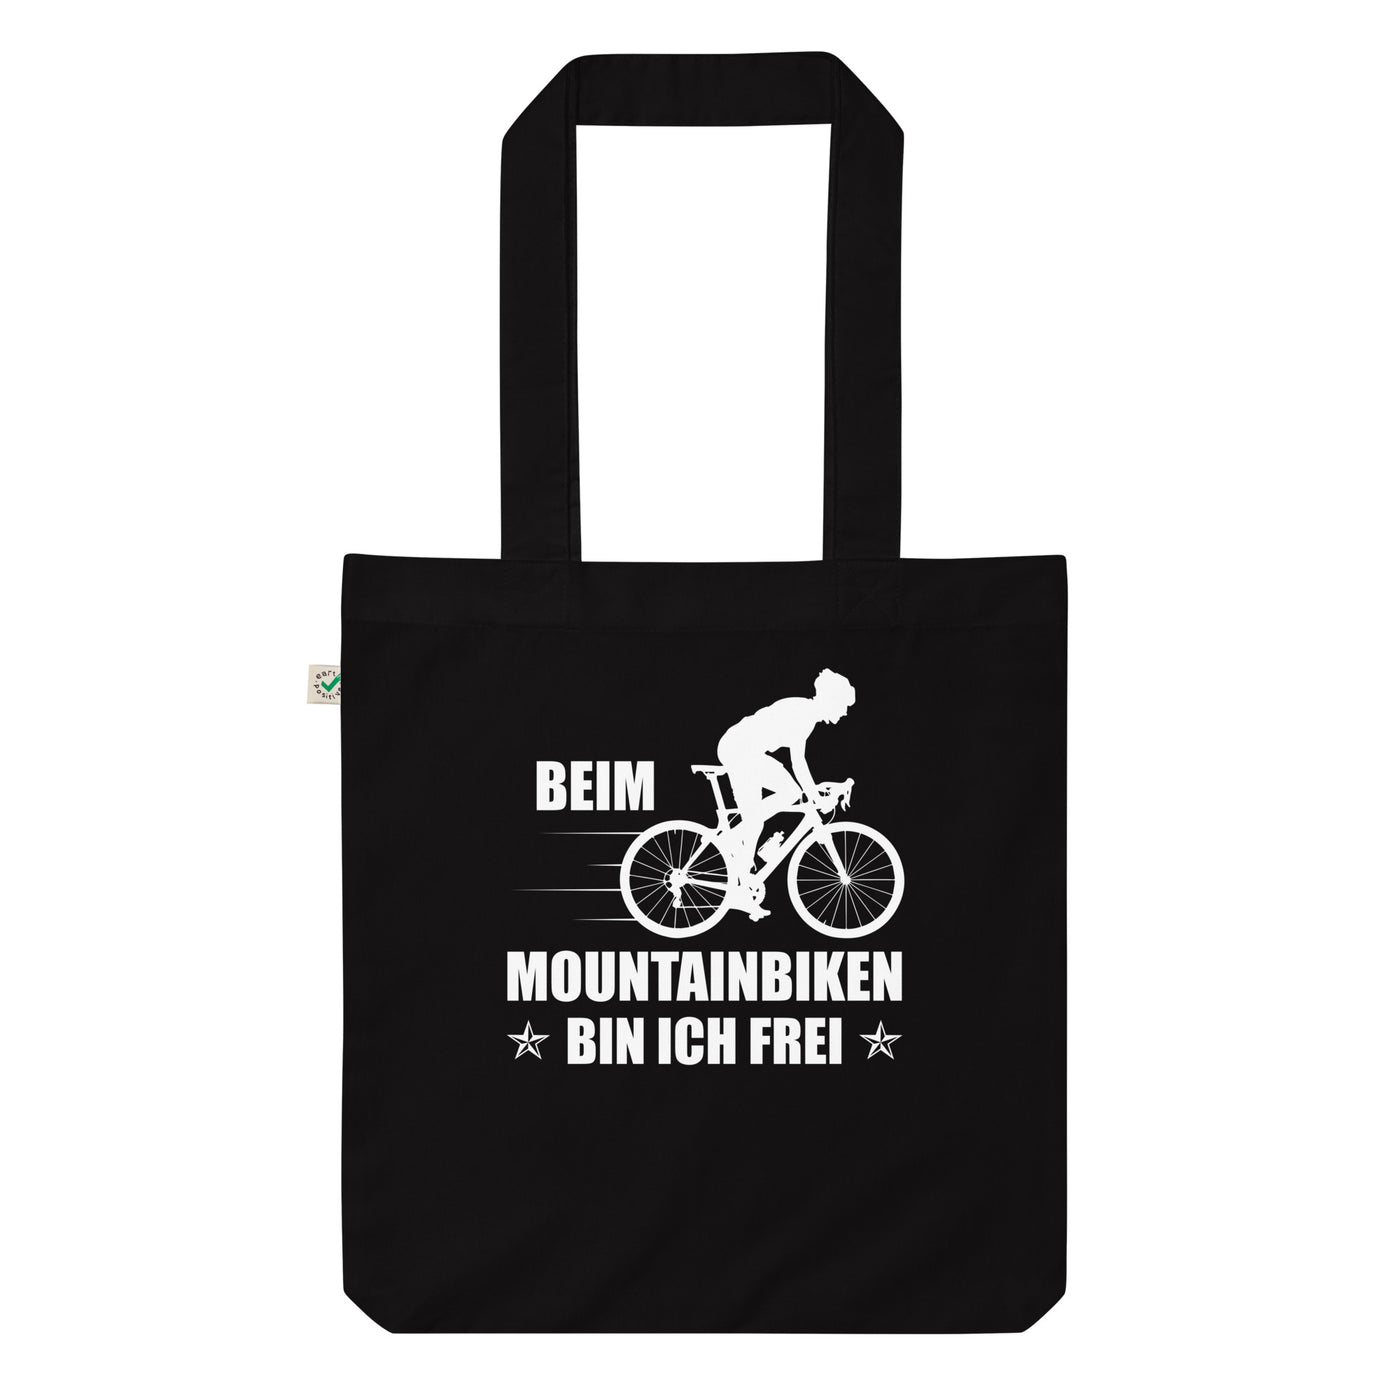 Beim Mountainbiken Bin Ich Frei 2 - Organic Einkaufstasche fahrrad Black